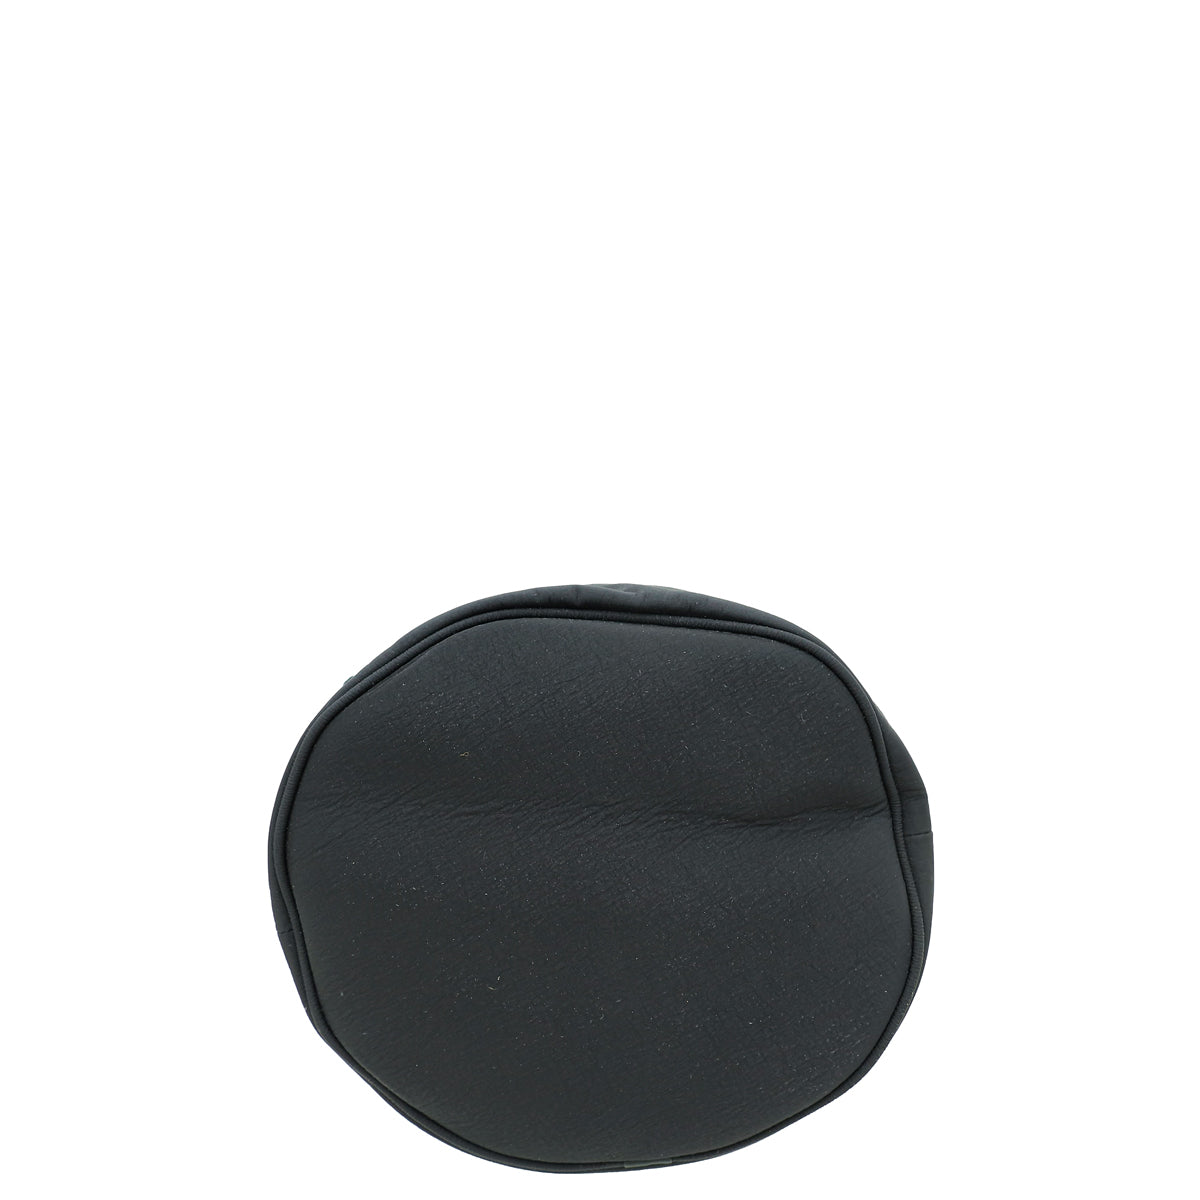 Bottega Veneta Black Nylon Soft Paper Touch Bucket Bag